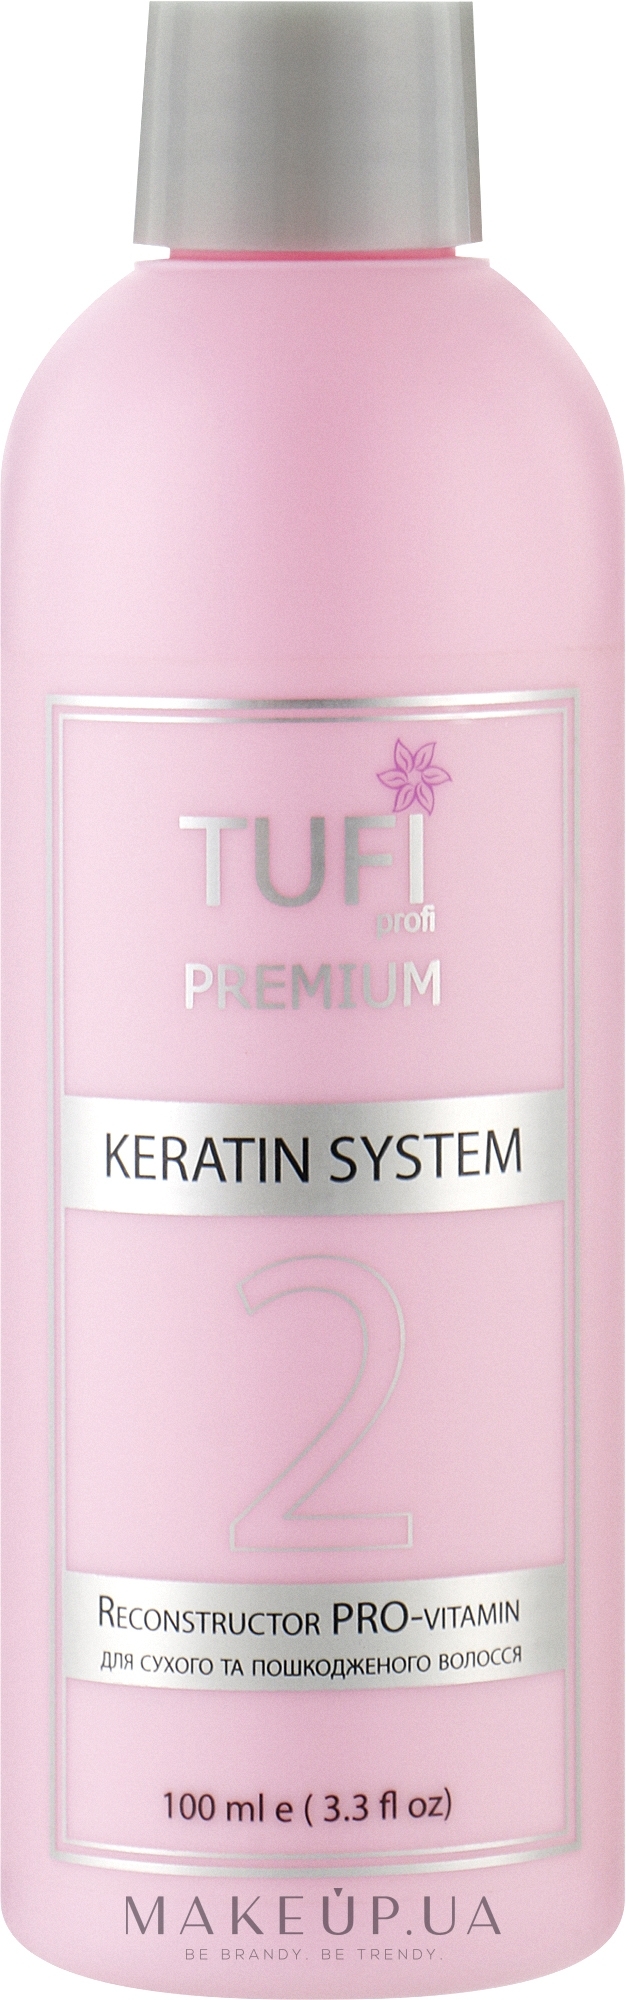 Кератин для сухих и поврежденных волос - Tufi Profi Premium Reconstructor PRO-Vitamin — фото 100ml